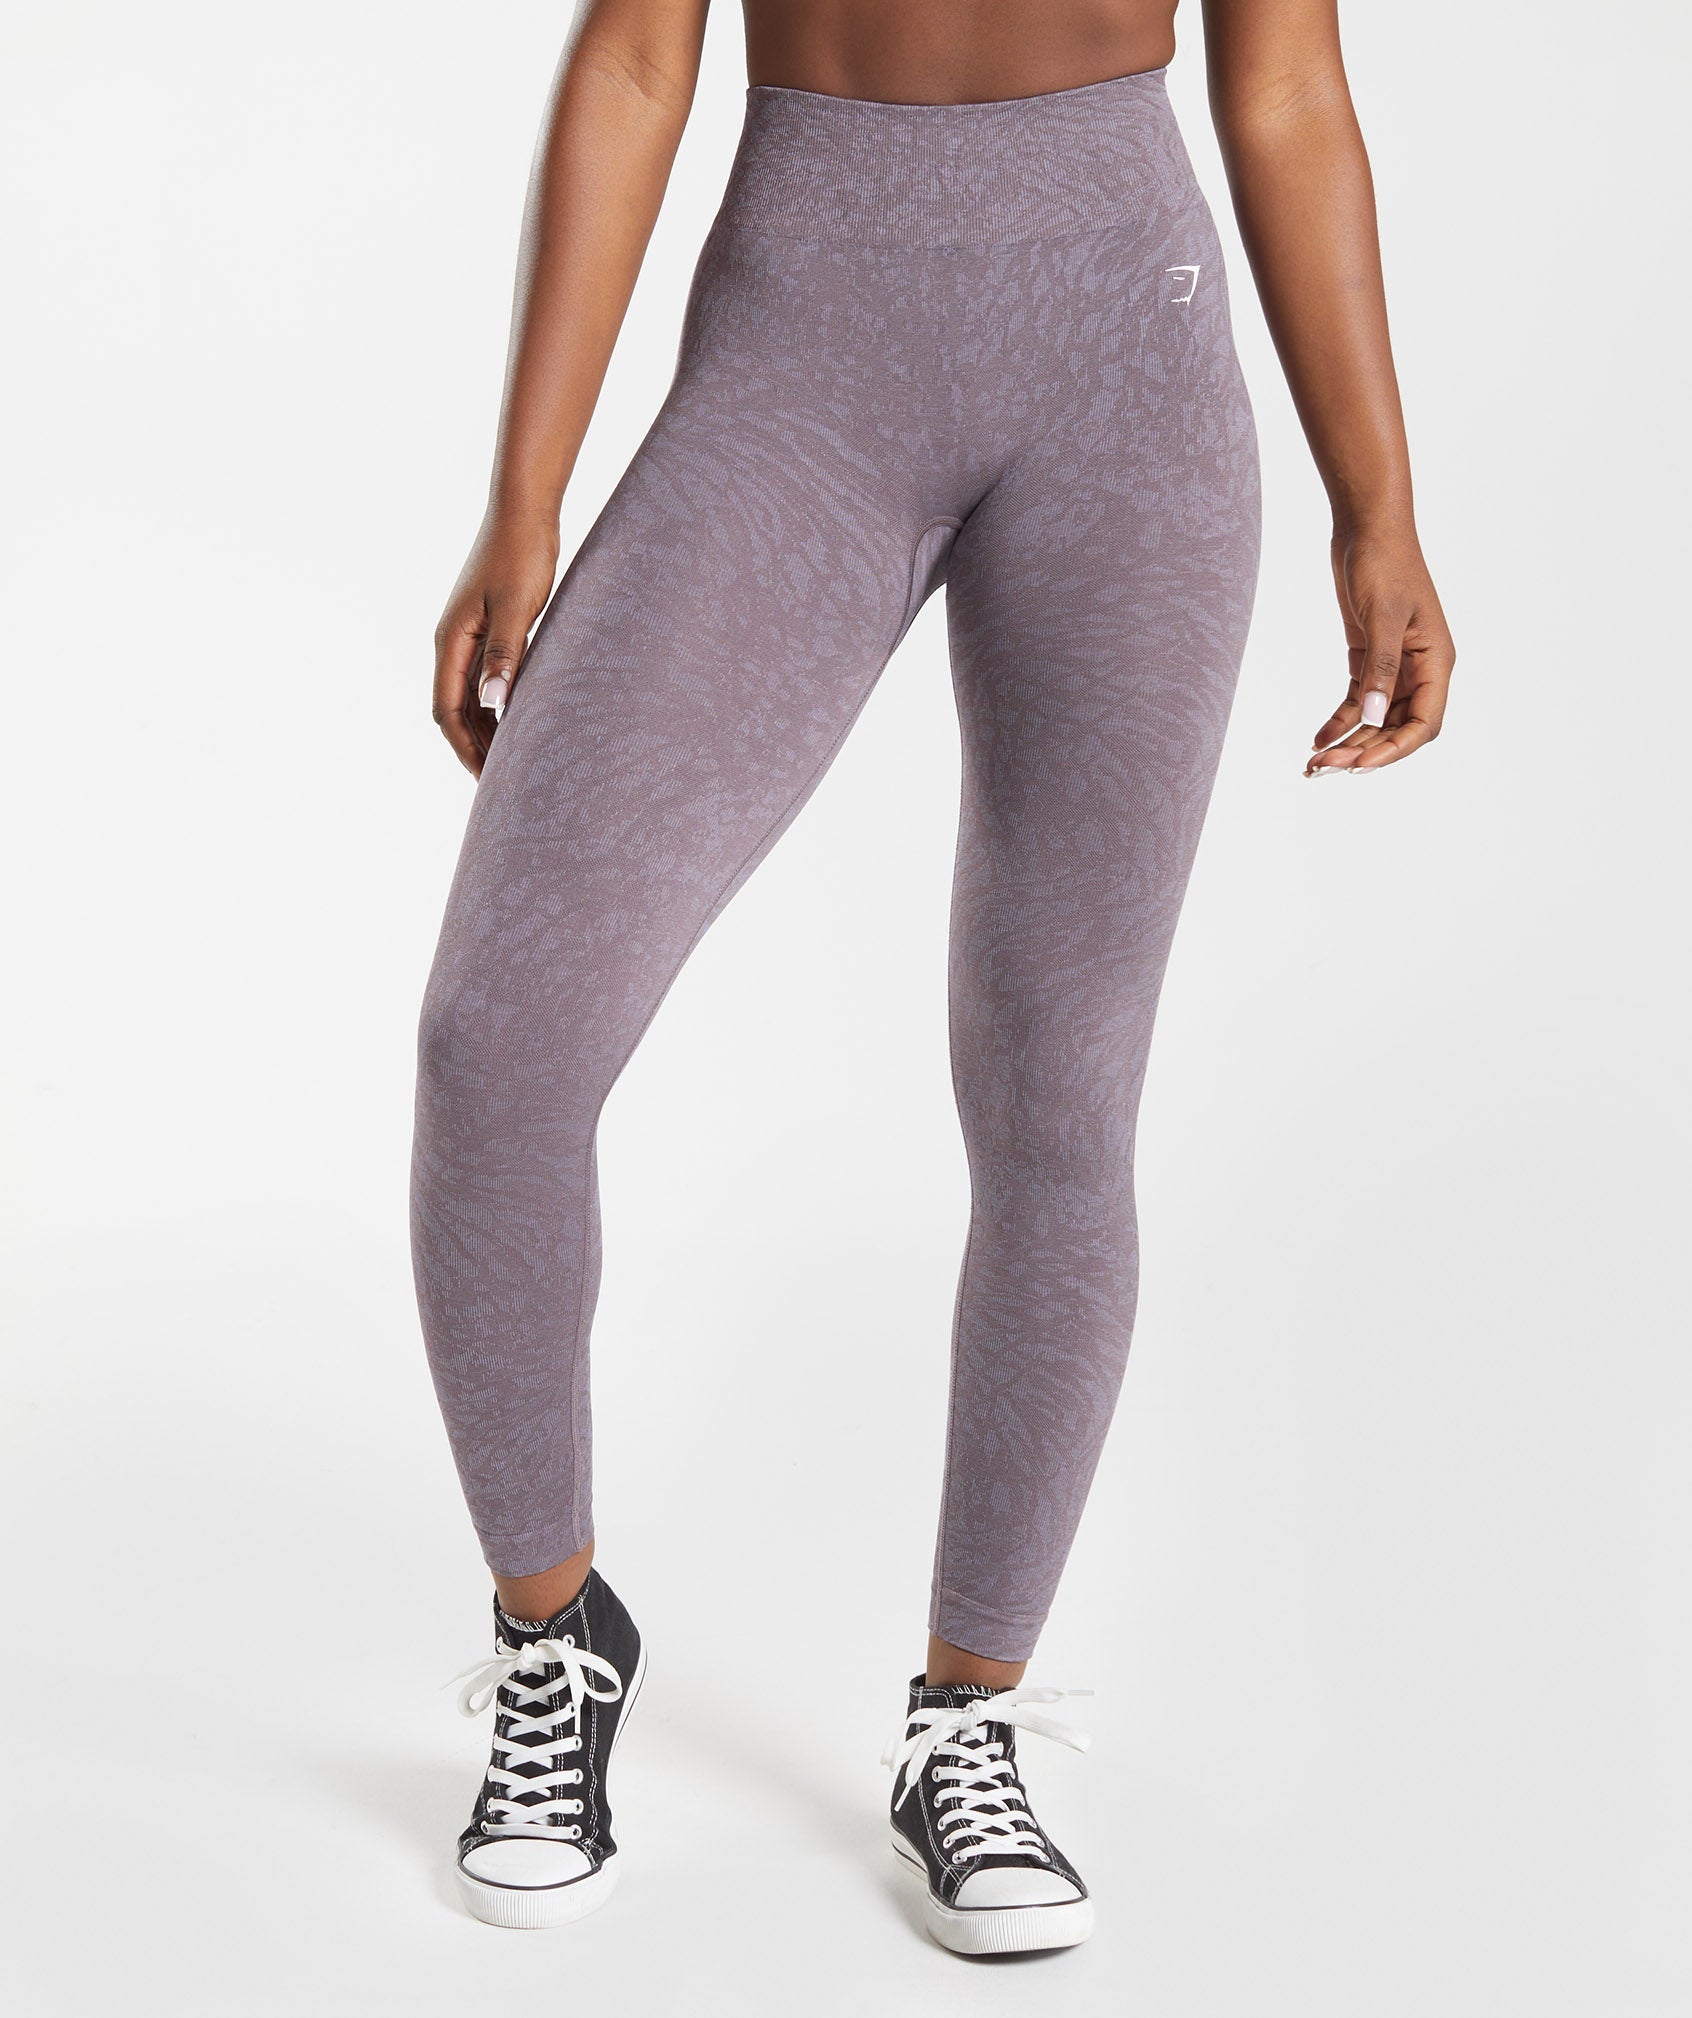 Alosoft Leggingswomen's Seamless Spandex Yoga Pants - Gymshark-inspired Fitness  Leggings